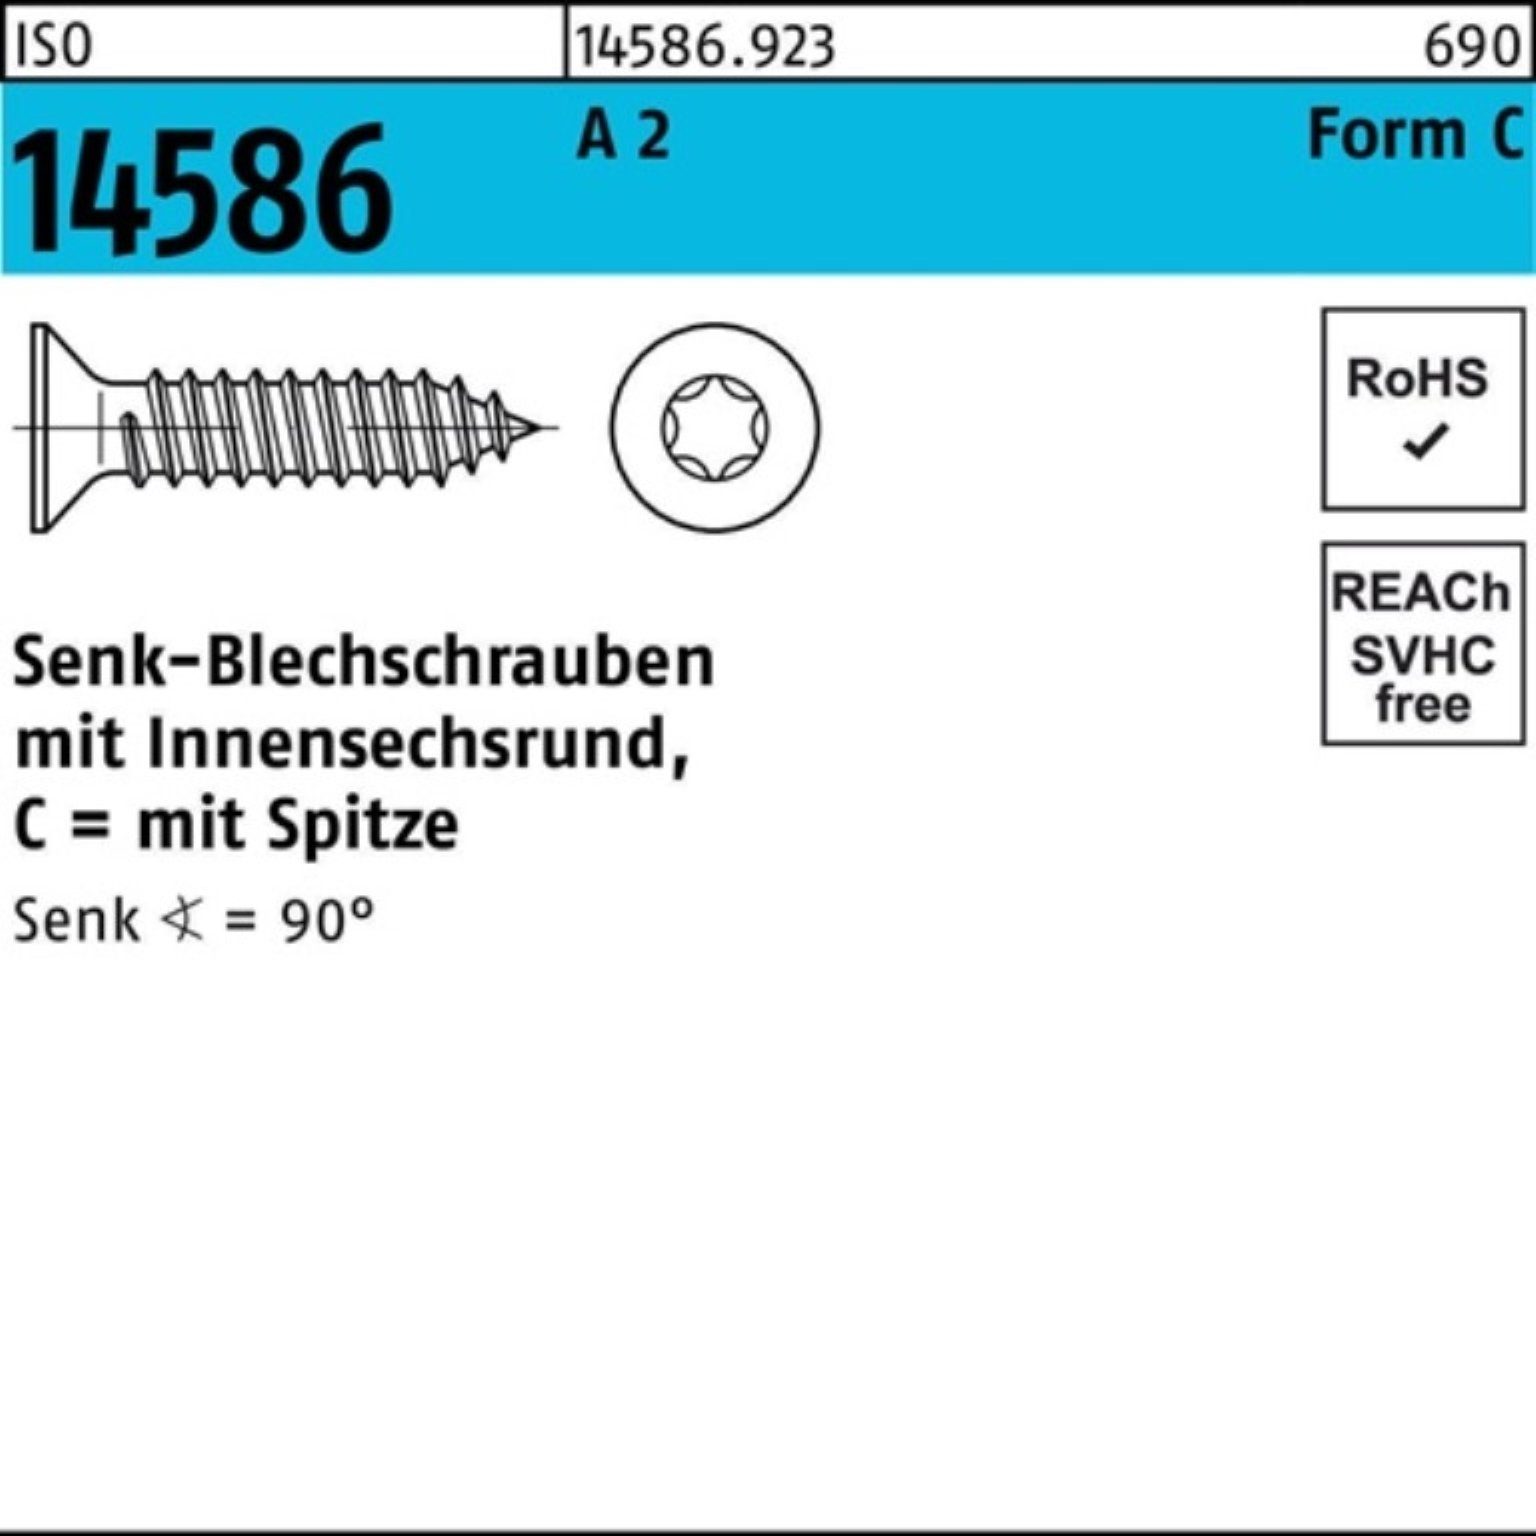 Reyher Schraube 100er Pack Senkblechschraube ISO 14586 ISR/Spitze 4,8x 90 -C T25 A 2 1